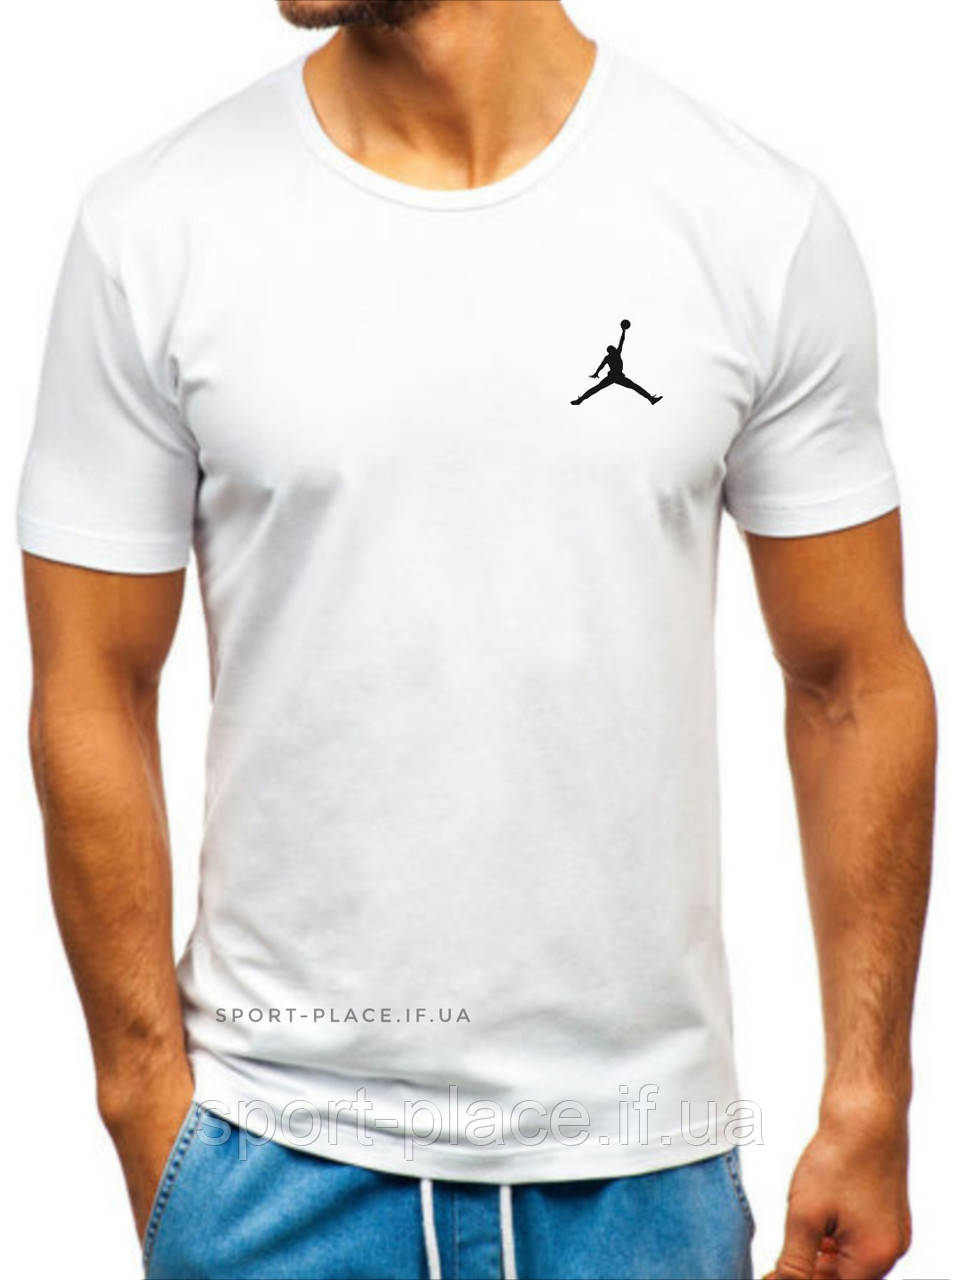 Чоловіча футболка Jordan (Джордан) біла (маленька емблема) бавовна